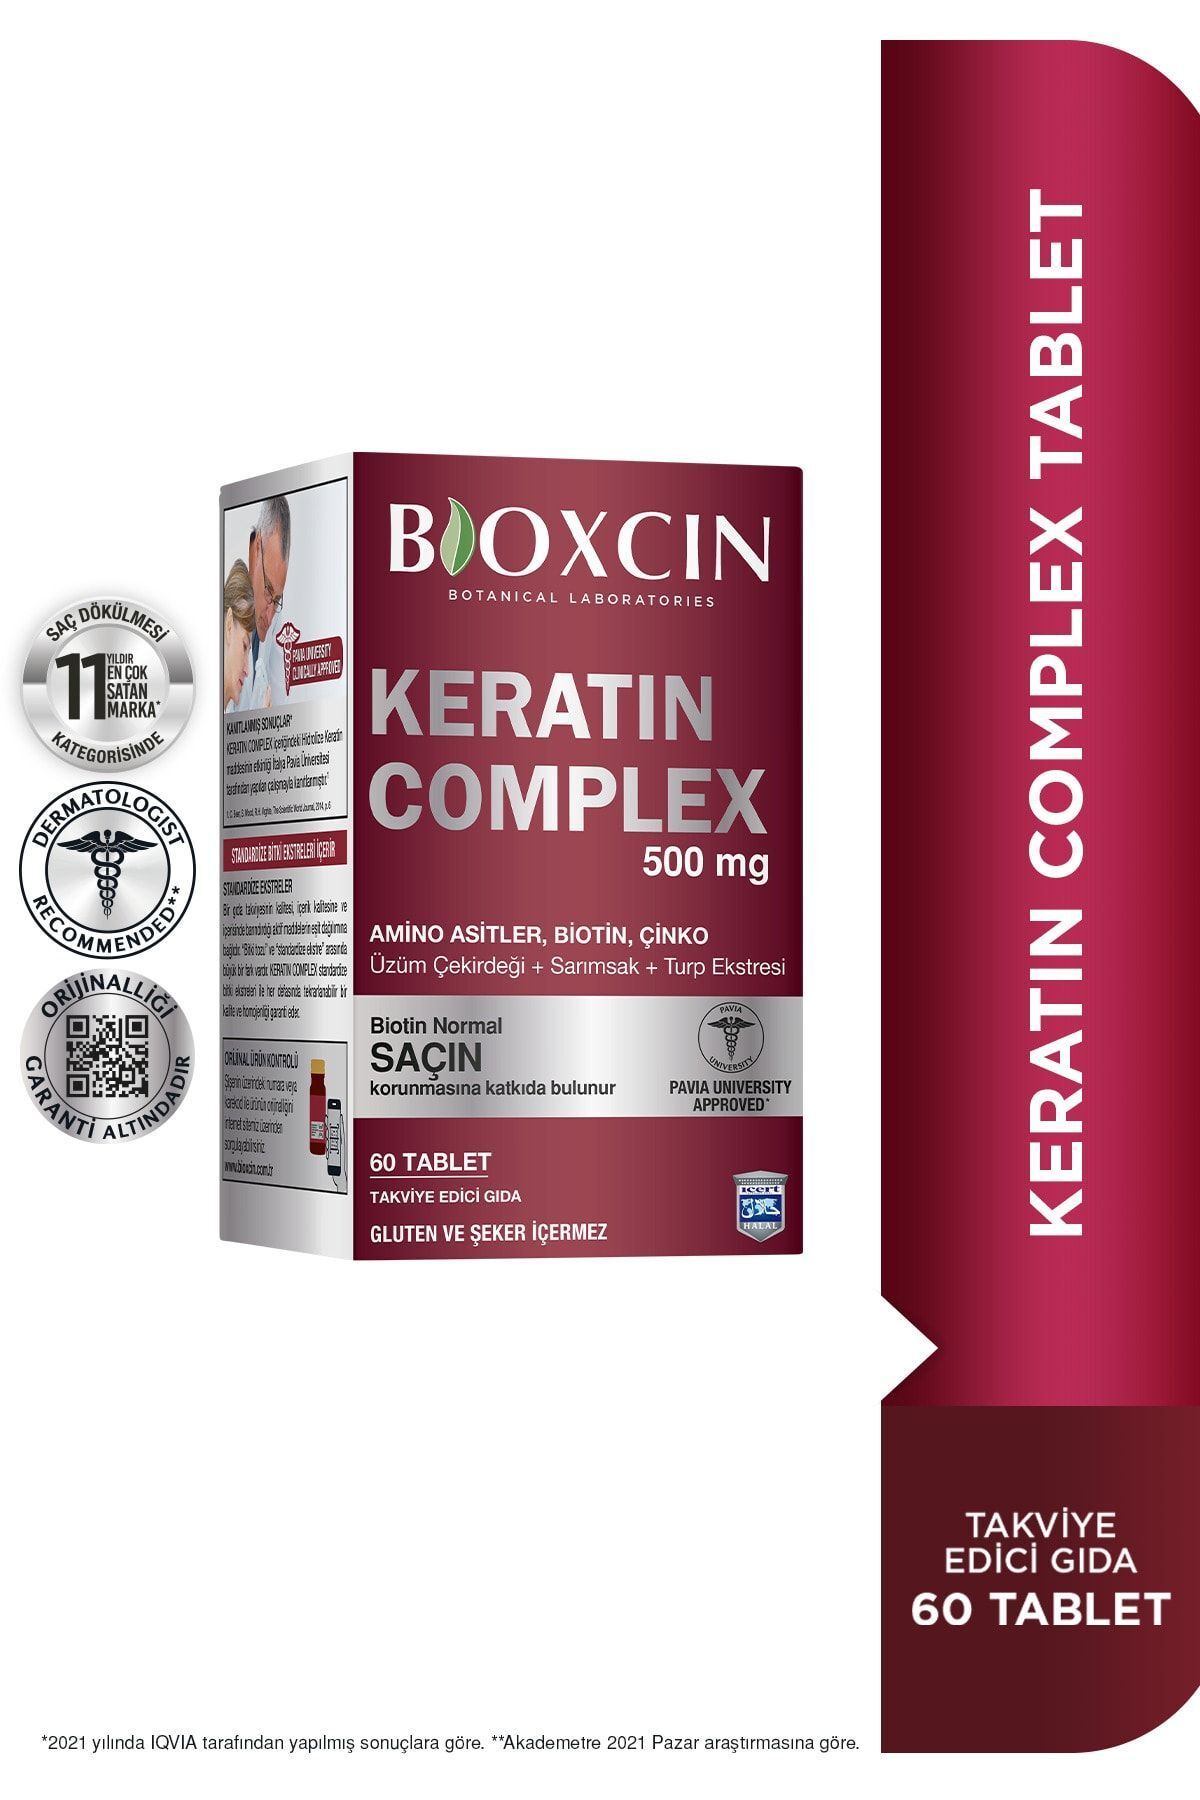 Bioxcin Keratin Complex 500mg 60 Tablet 50036037